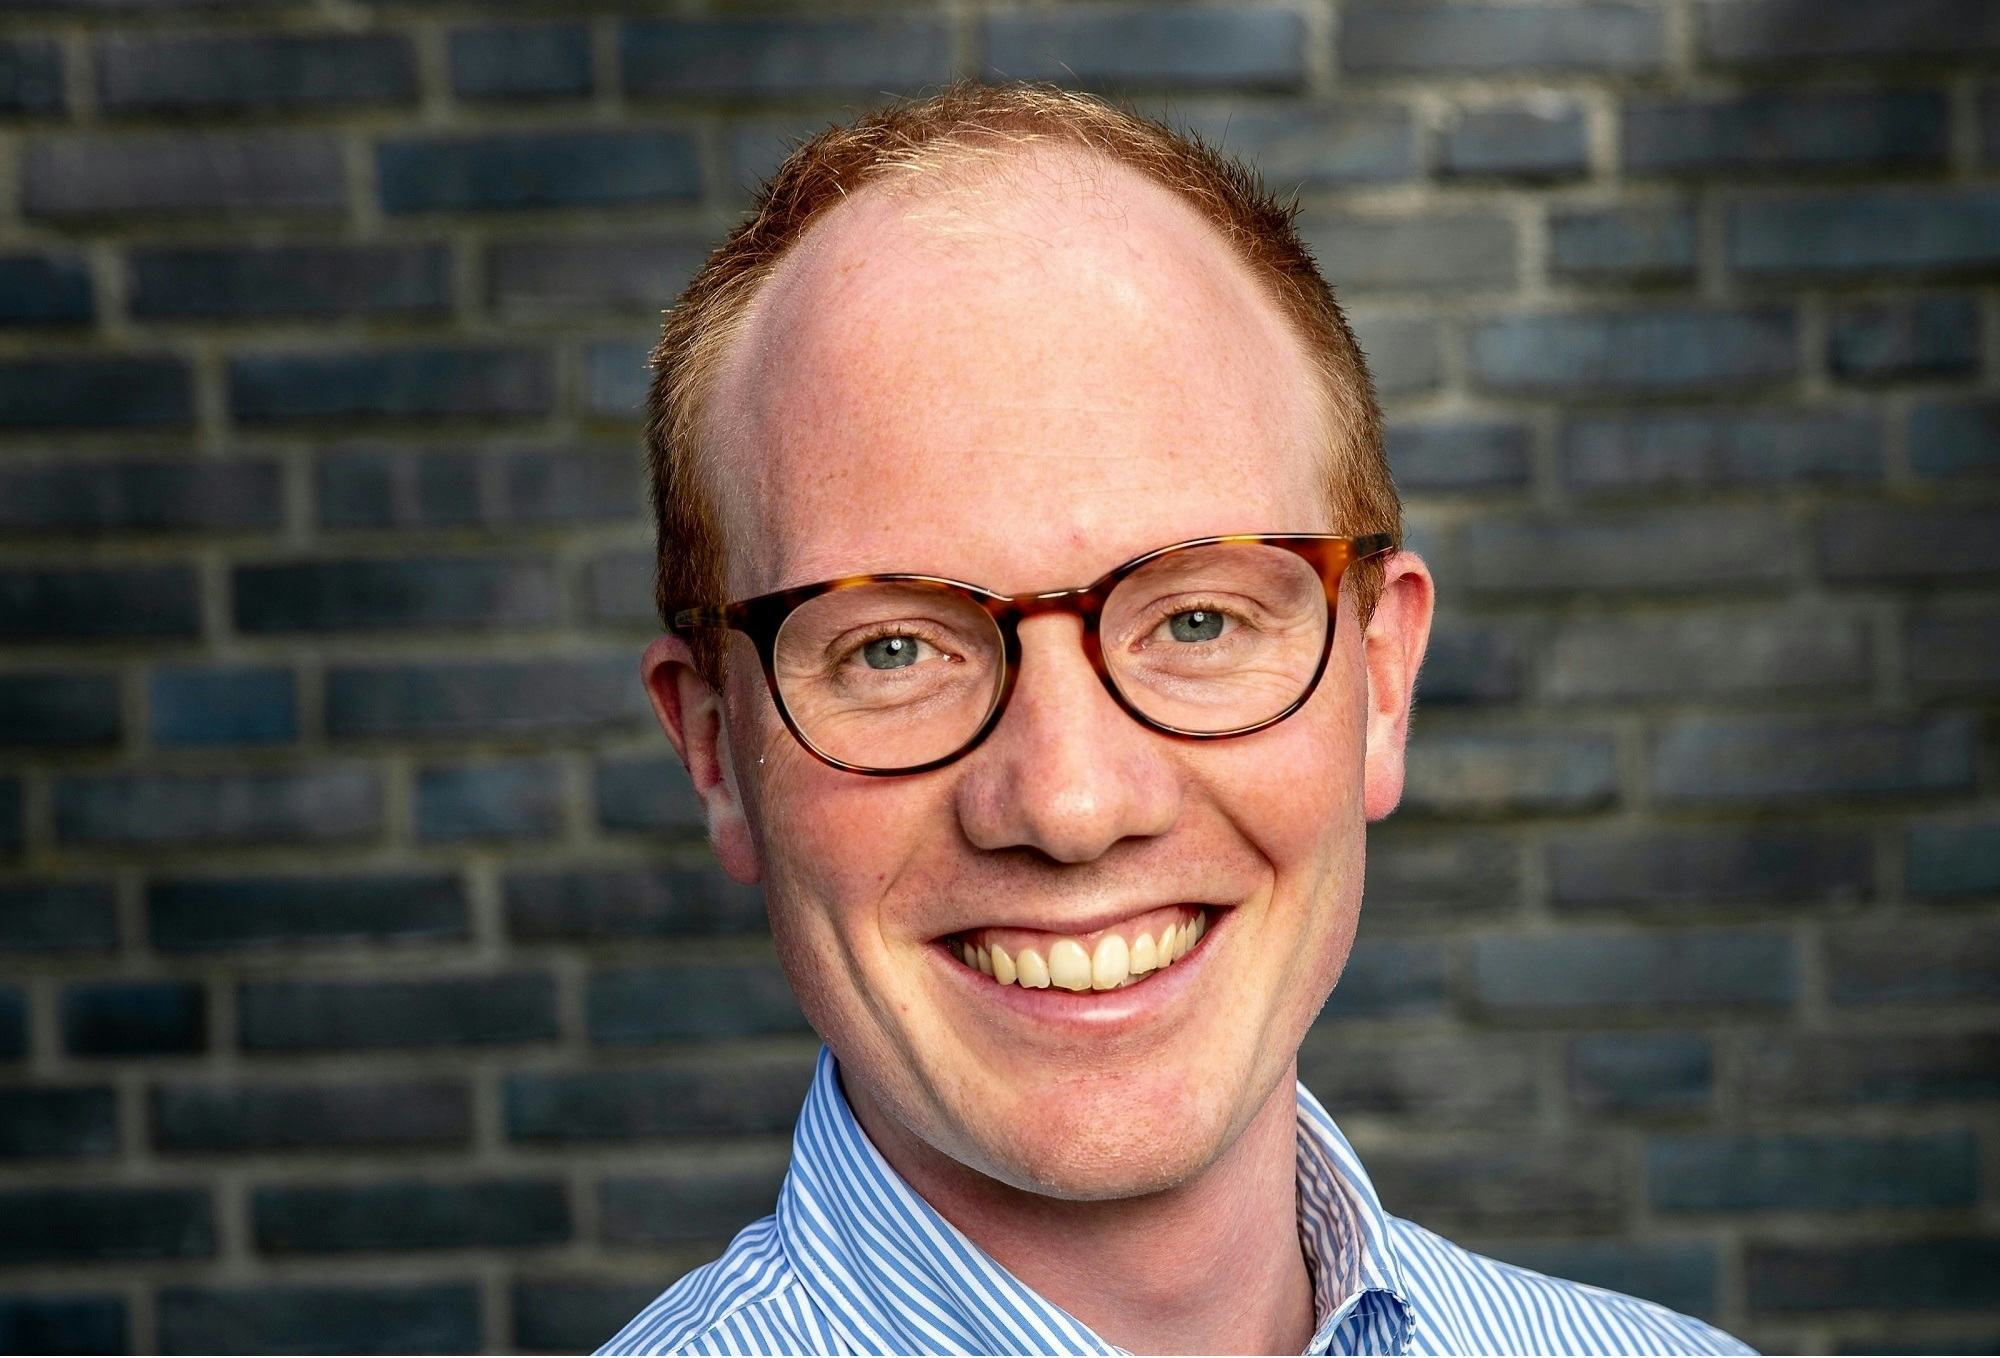 Paul Buijs, Assistent Professor Sustainable Logistics aan de Universiteit van Groningen